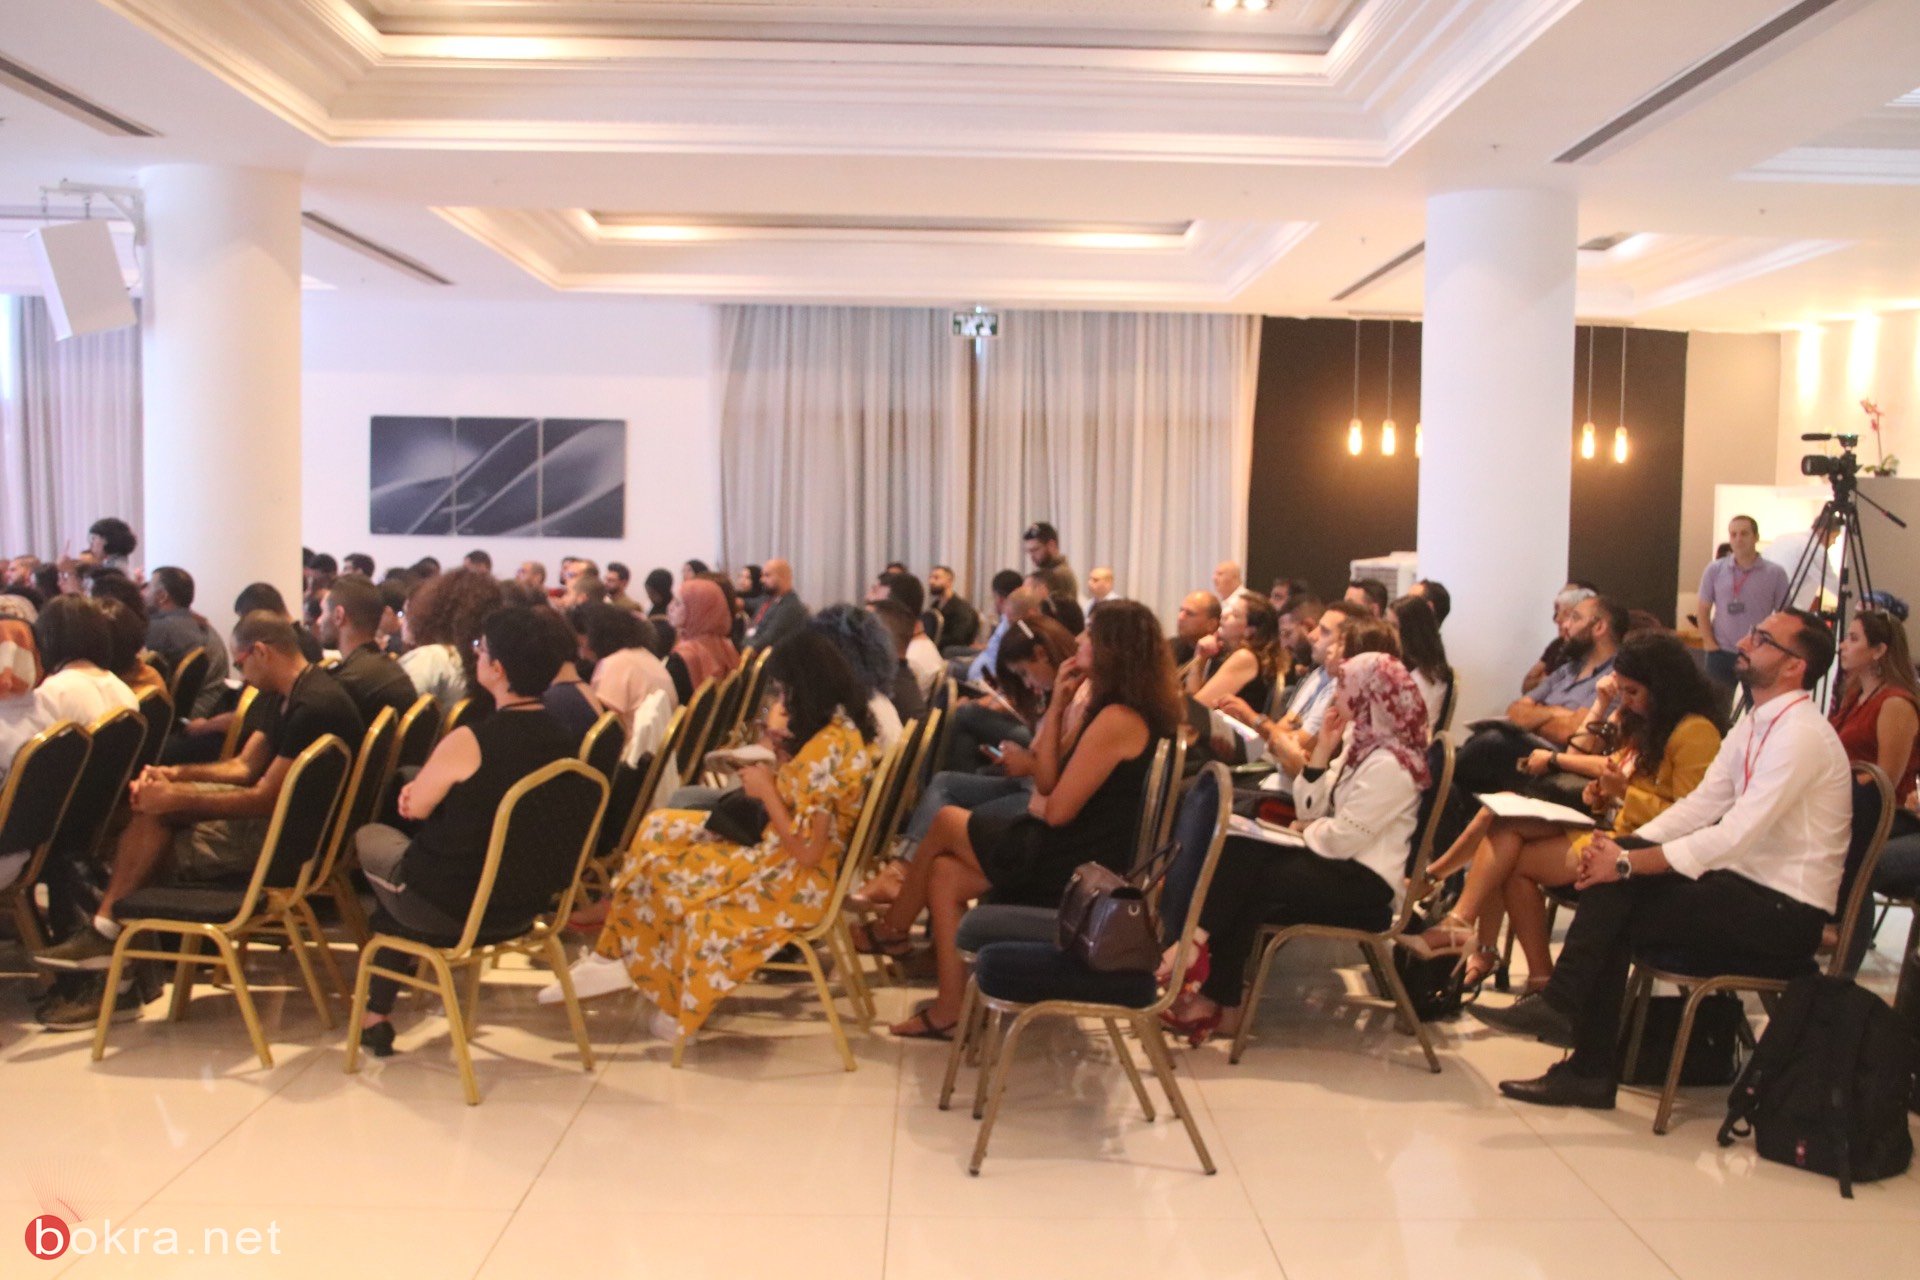 حيفا: مشاركة واسعة في مؤتمر "وصول" حول آخر التطورات في قنوات التسويق الرقمي-30